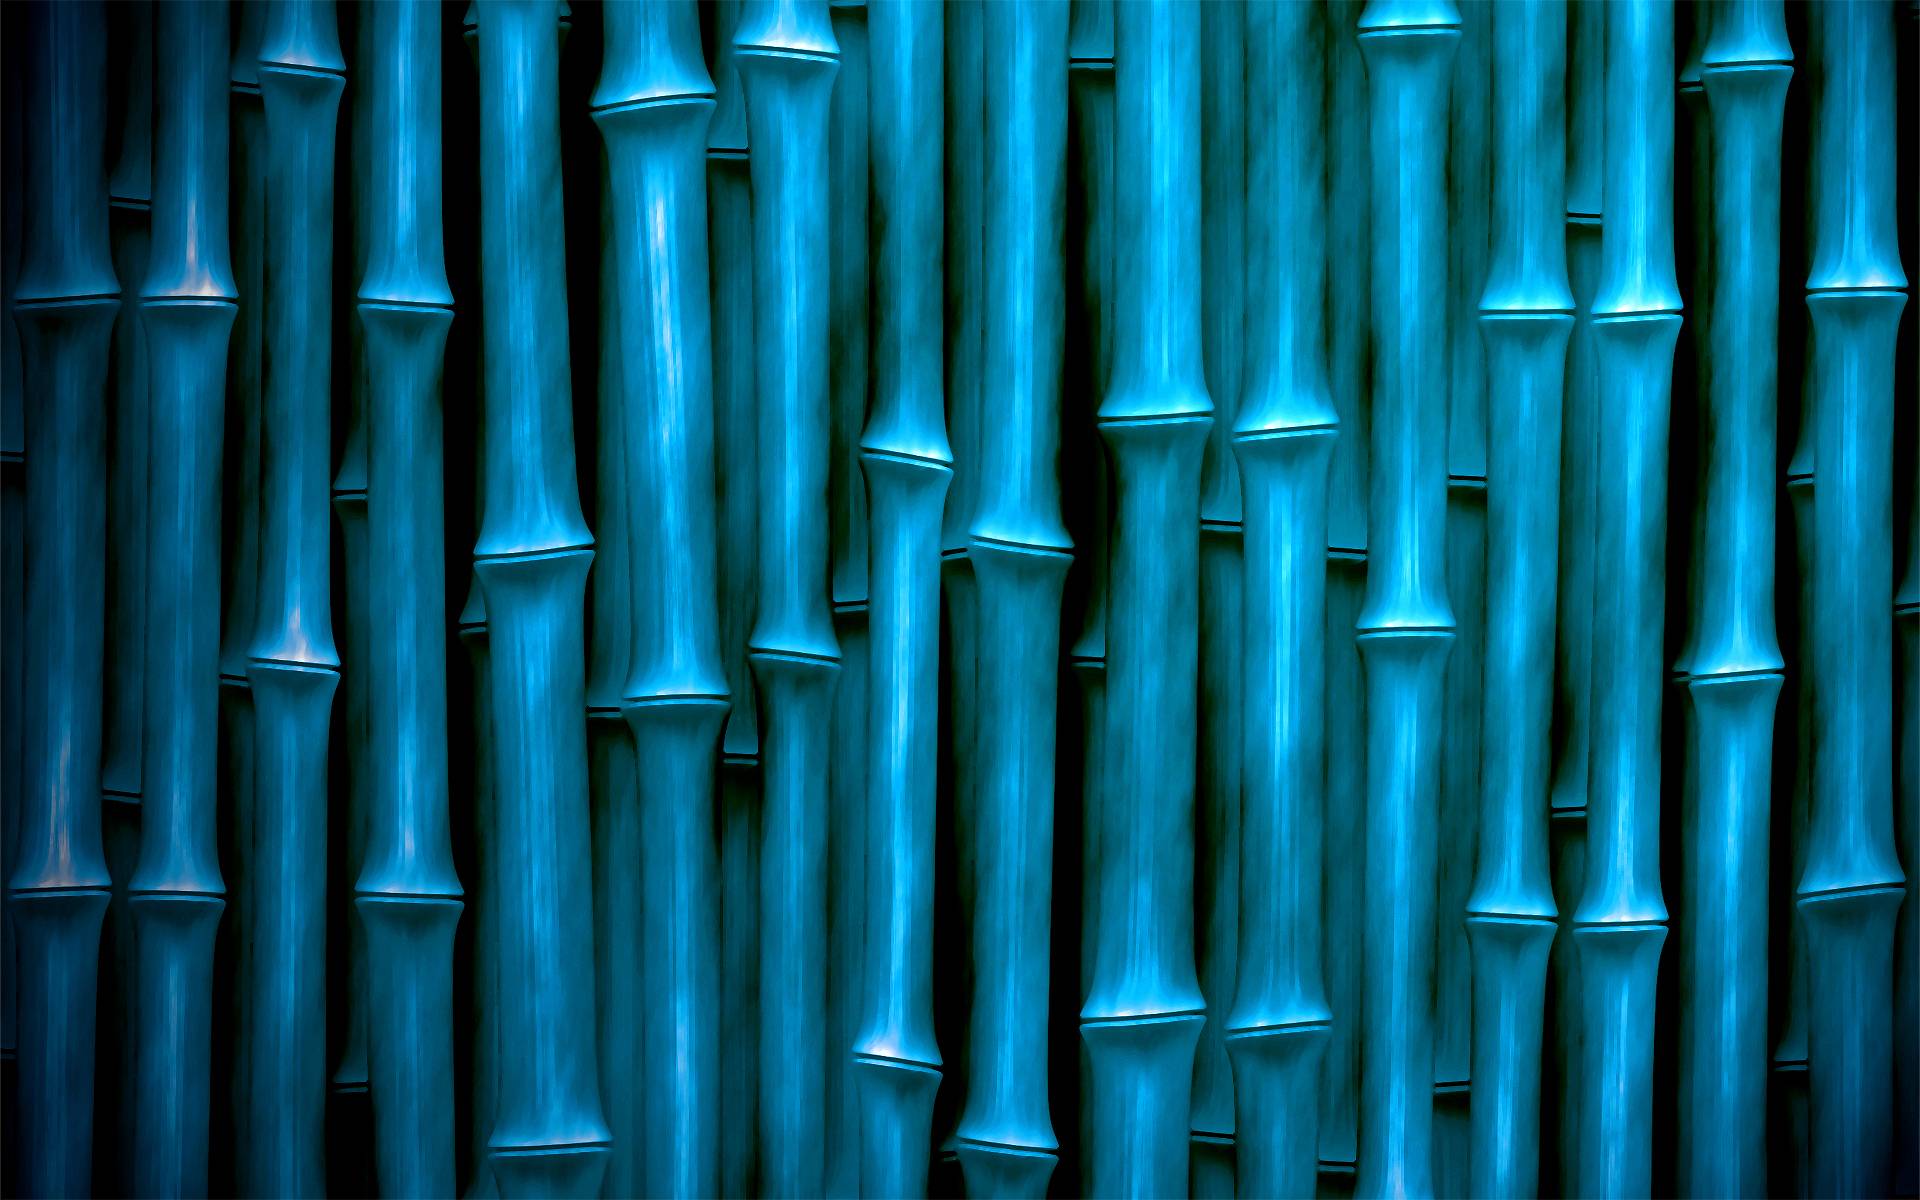 Aqua Blue Bamboo widescreen wallpaper. Wide